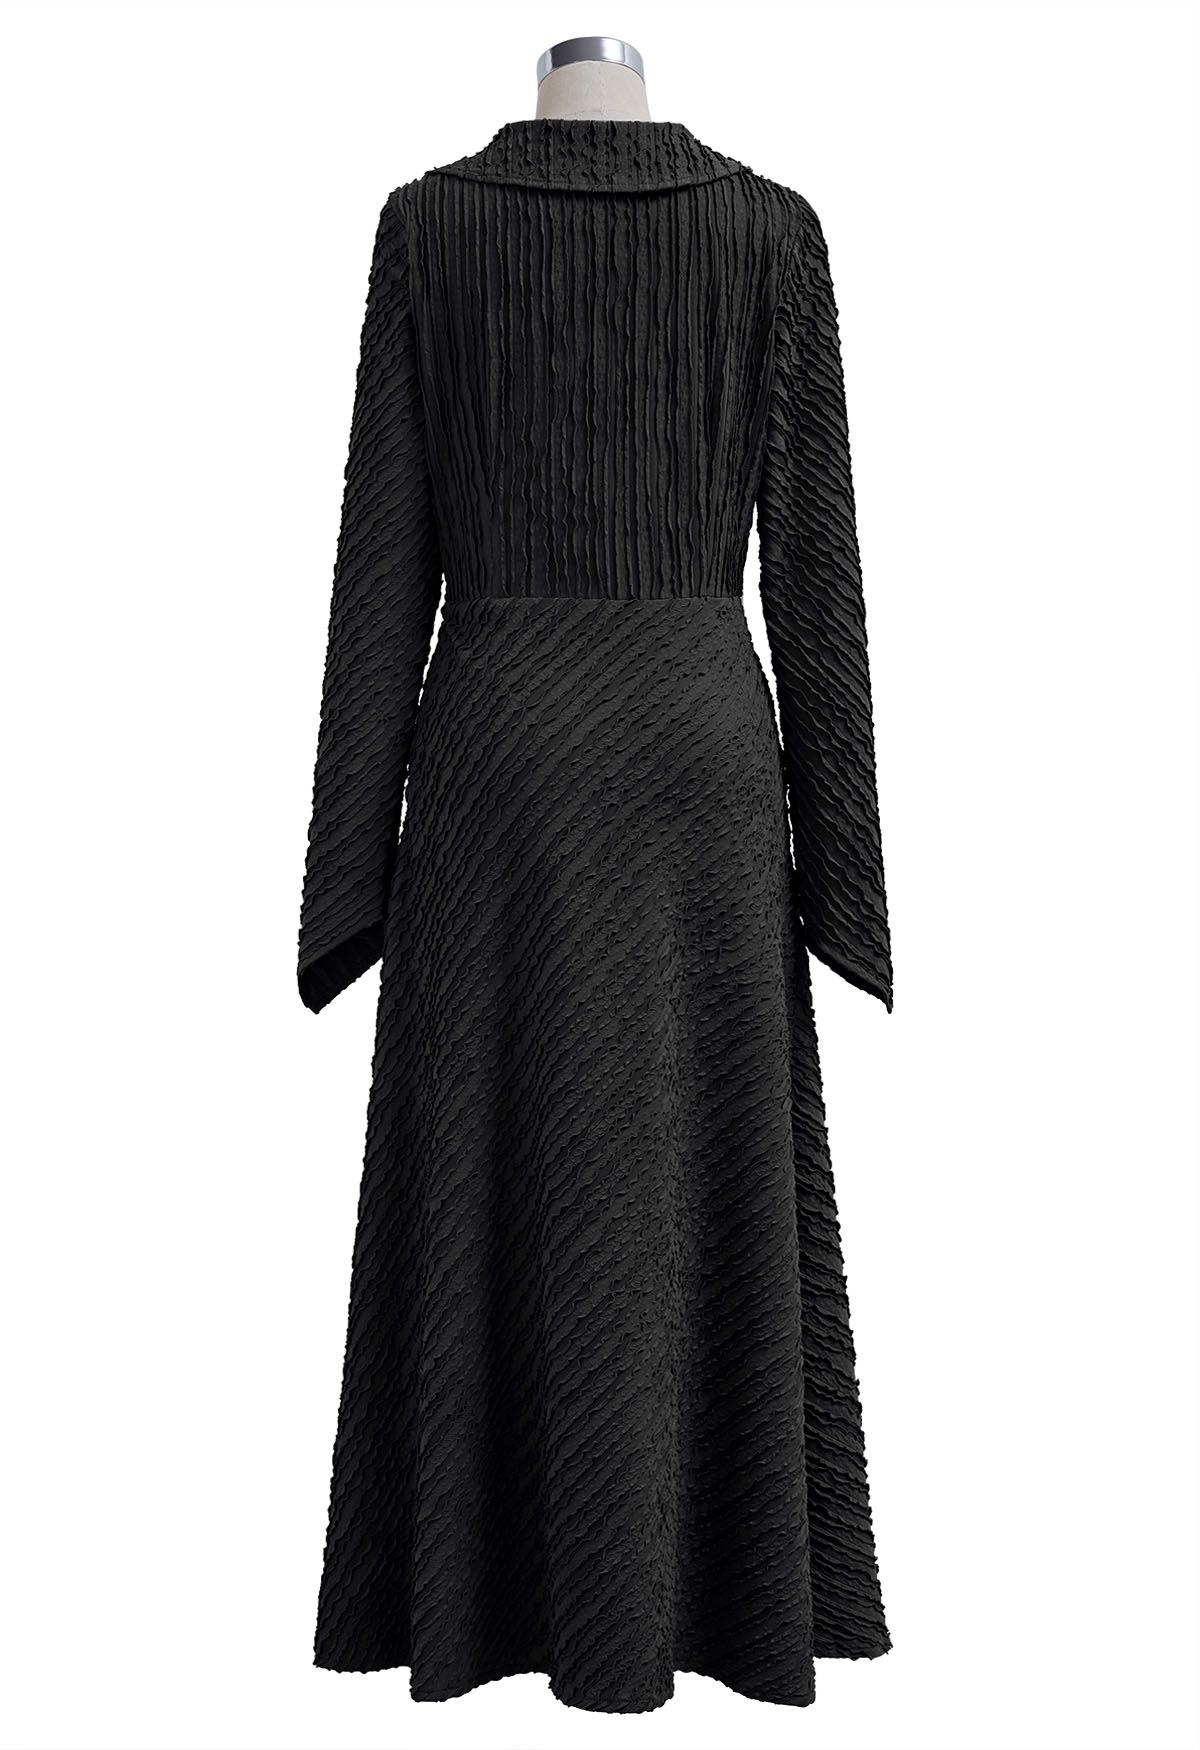 Gewelltes Kleid mit Kragen und Surplice-Ausschnitt in Schwarz